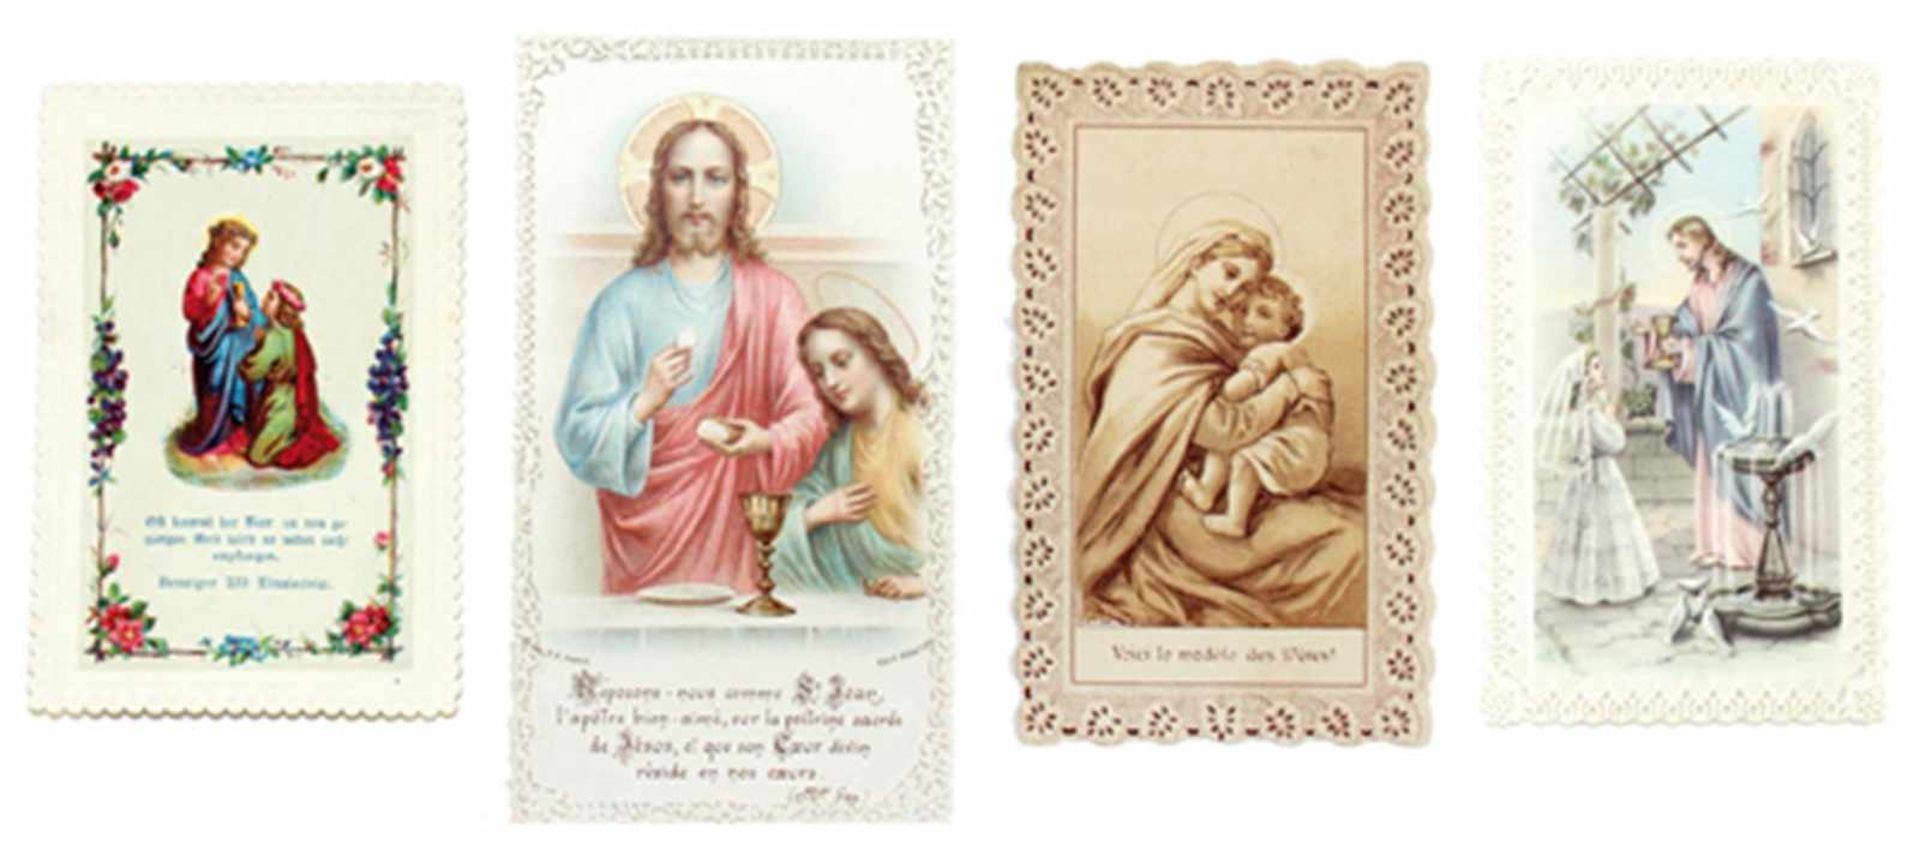 Andachtsbilder.Konvolut von ca. 30.000 Andachts- u. Heiligenbildern u.a. religiösen Darstellung - Bild 10 aus 10